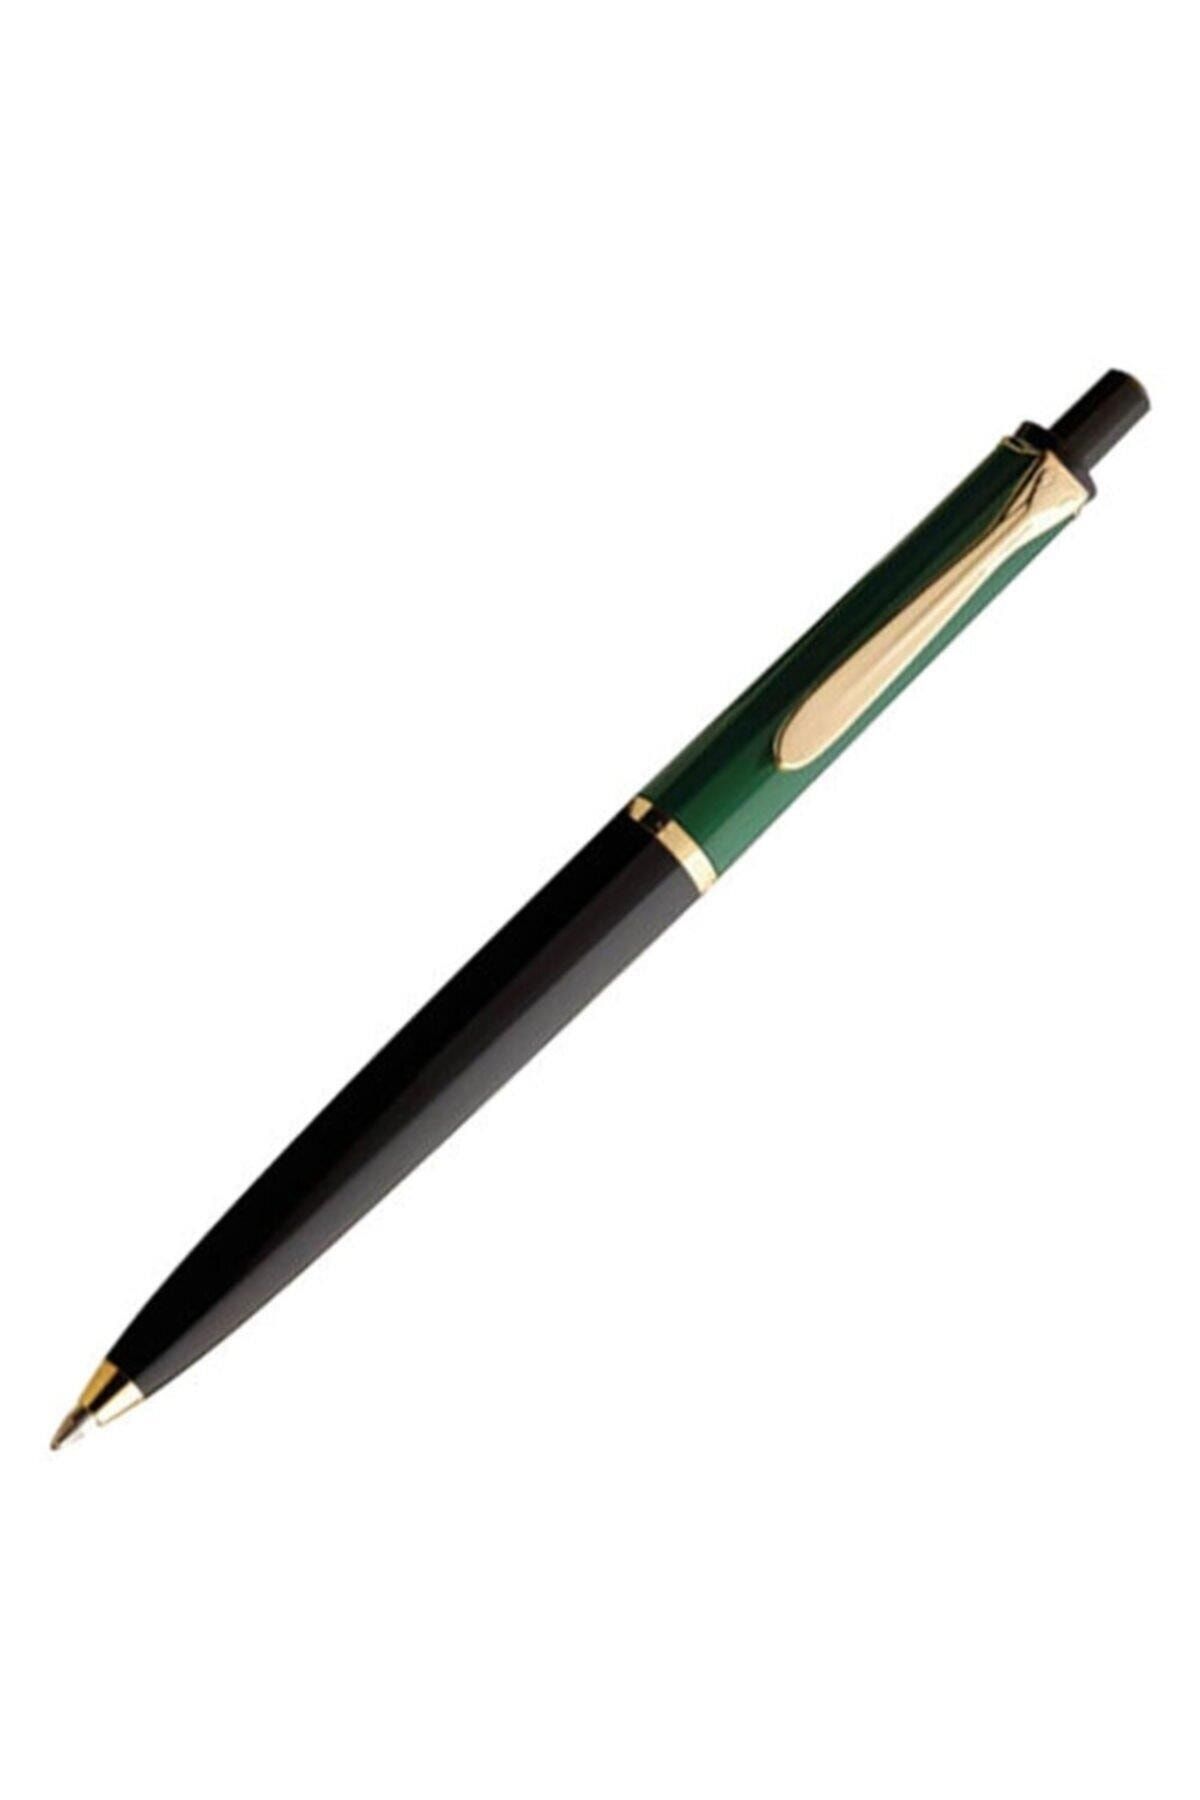 Pelikan Tükenmez Kalem Yeşil Siyah Tükenmez Kalem